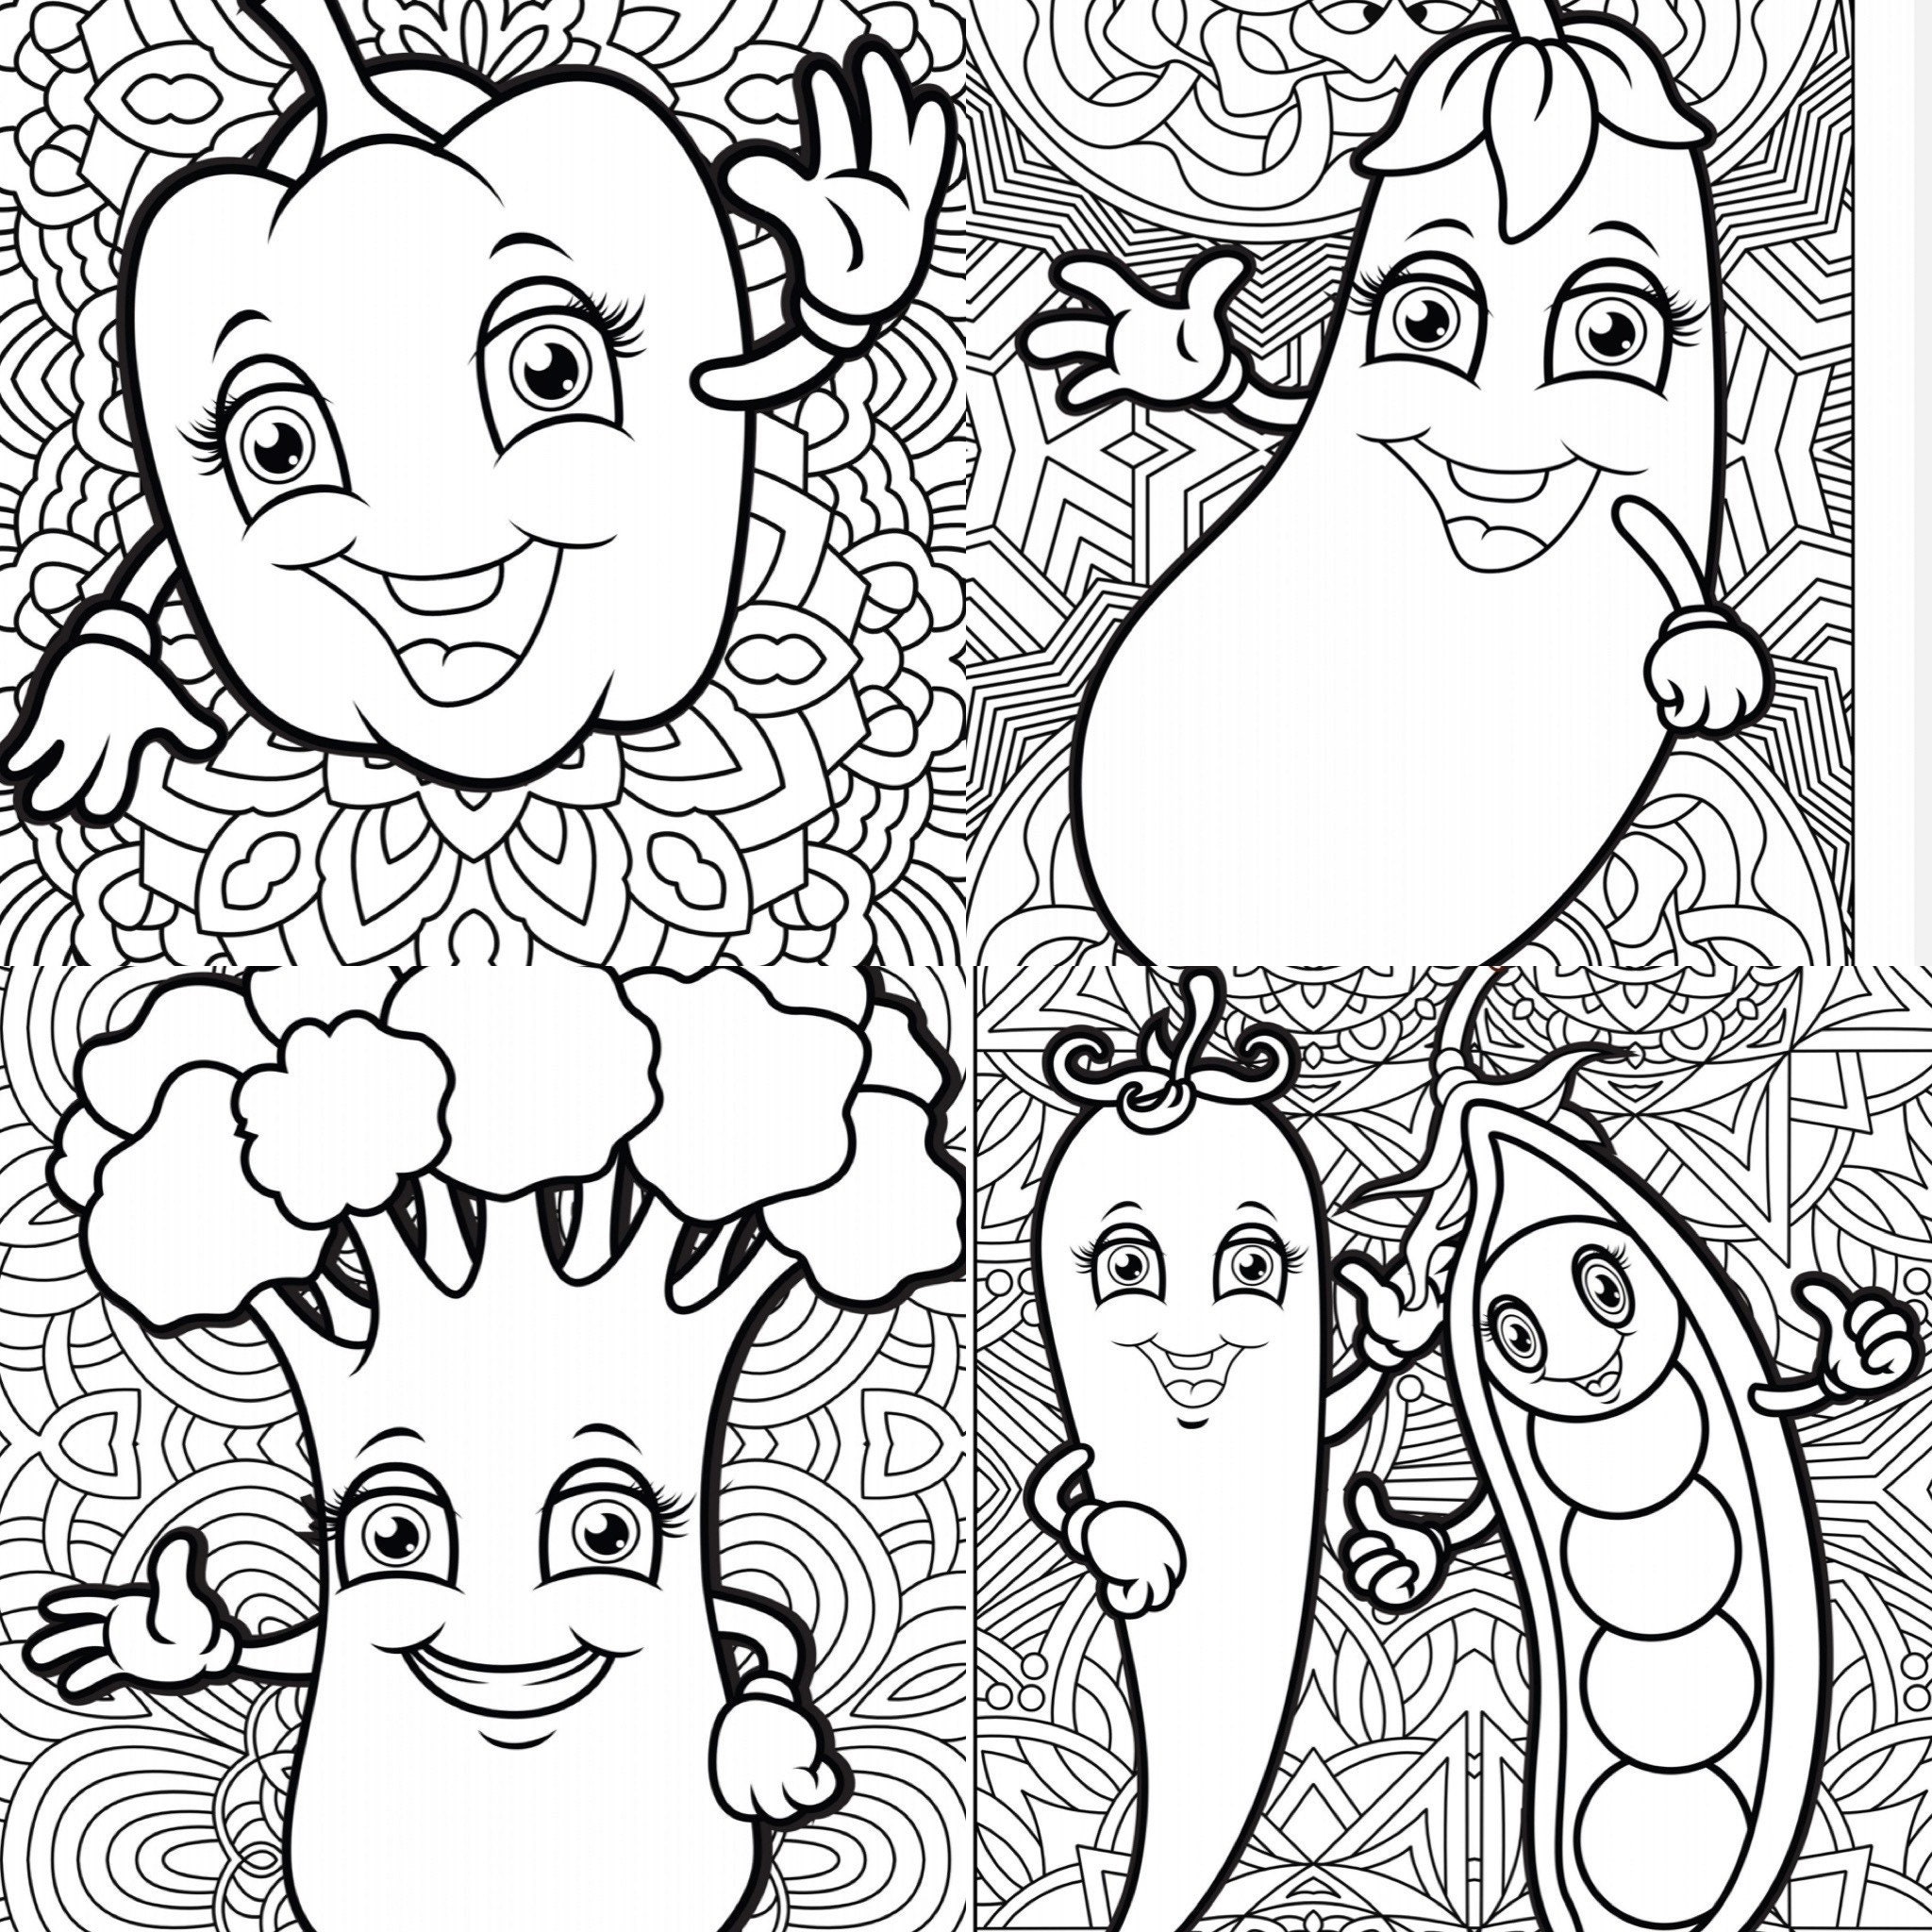 Zentangle kawaii Vegetables printable coloring pages-kawaii | Etsy